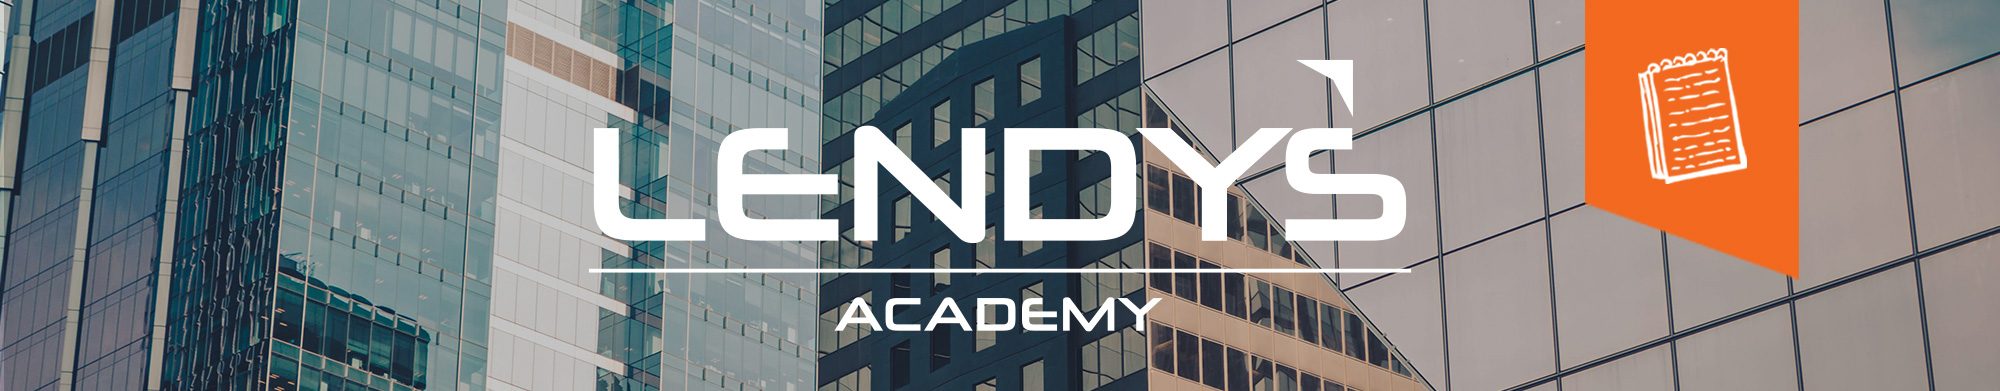 Lendys-academy-vidéo